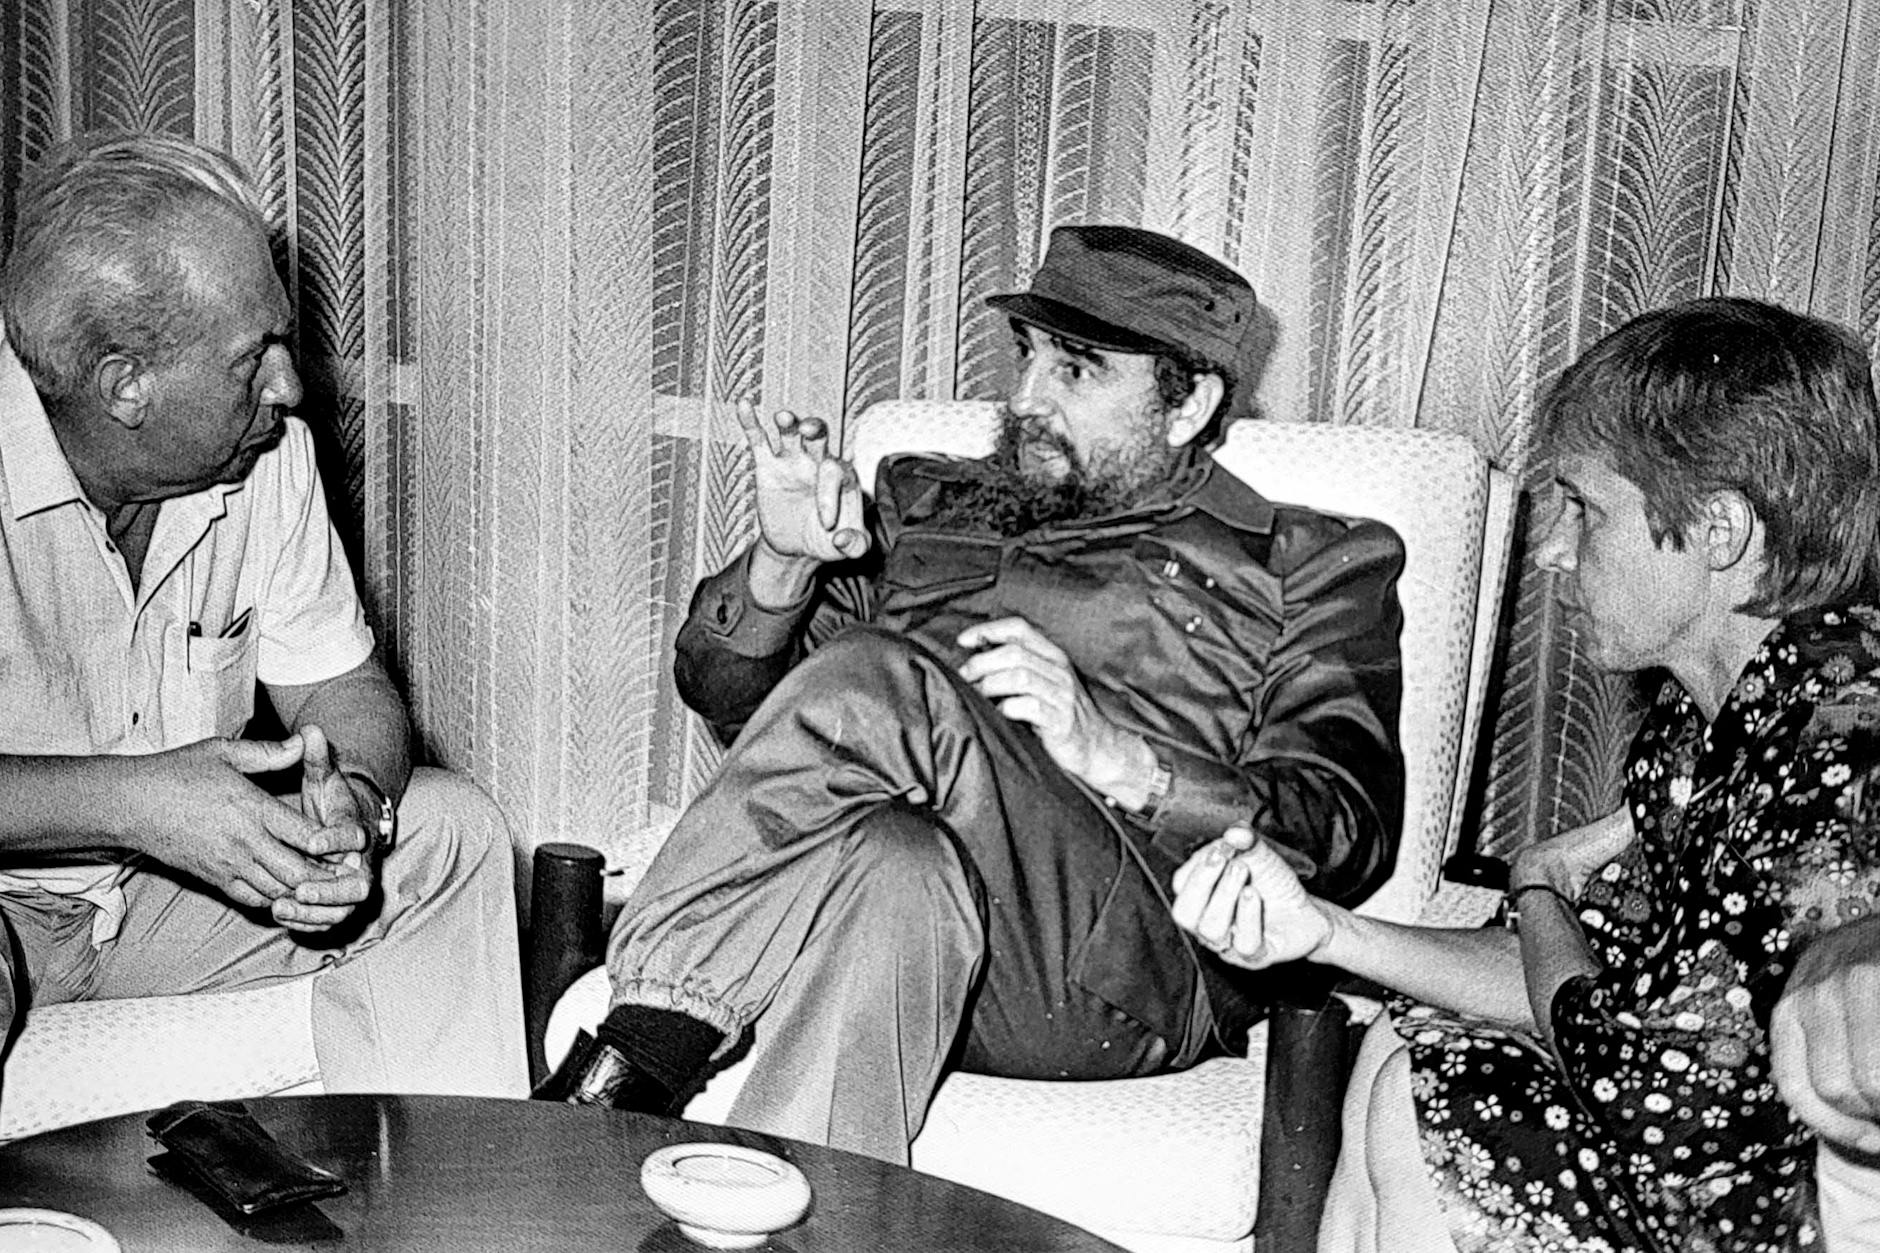 Ein noch nie veröffentlichtes Bild aus dem September 1984: Fidel Castro plaudert privat mit Konrad „Konni“ Naumann (l.). Fidel redet und redet. Irmingart Lemke (r.) dolmetscht und folgt dem Comandante bis in die Fingerbewegung.